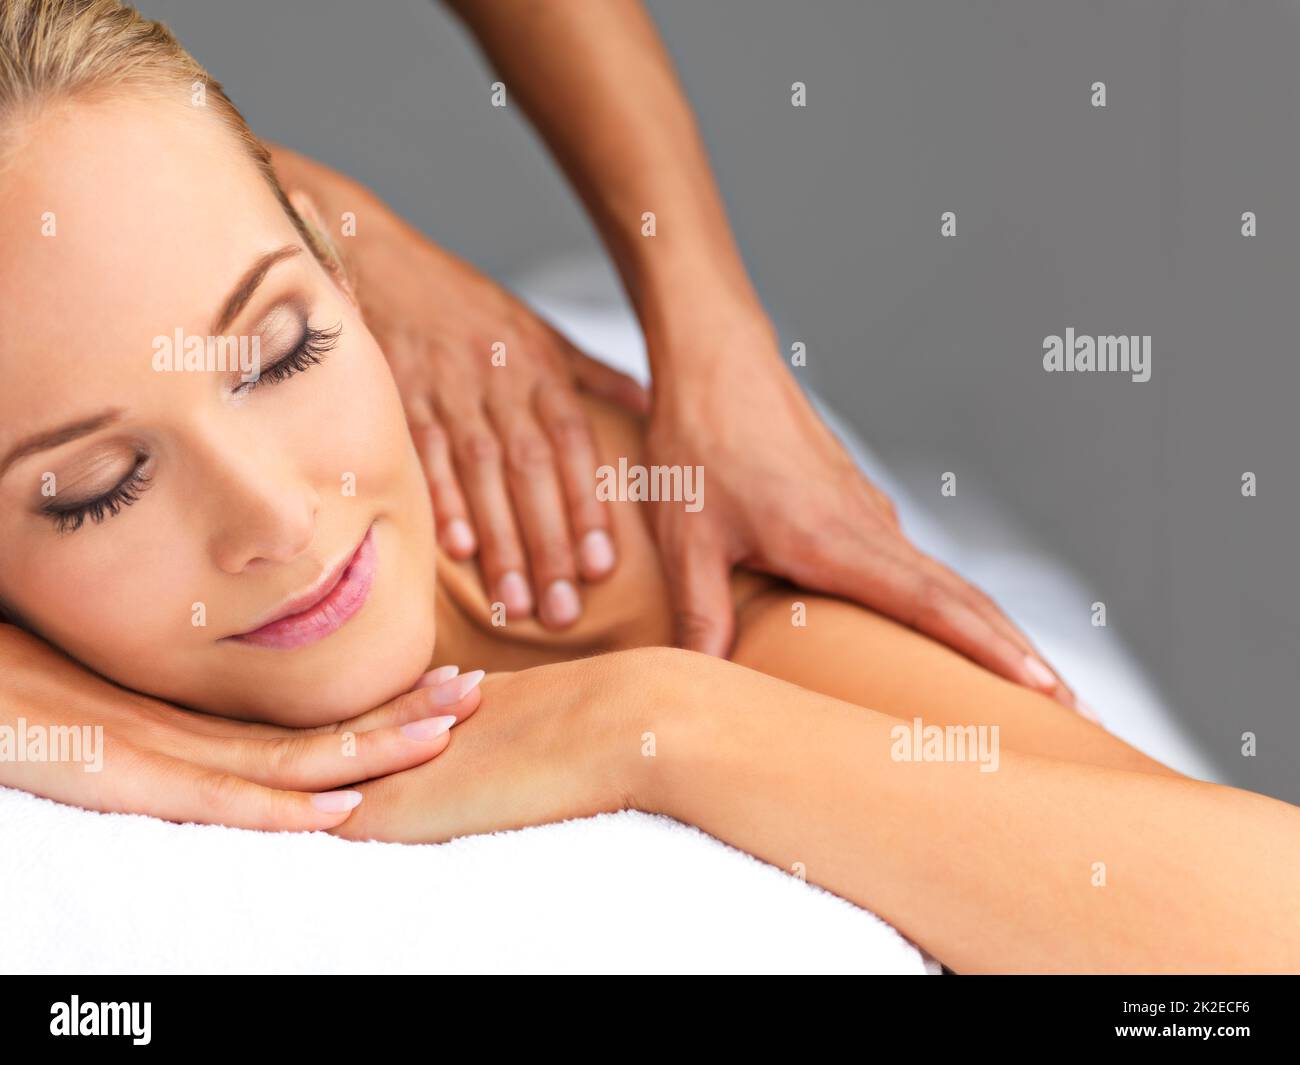 Das ist genau das, was ich brauchte. Eine schöne junge Frau, die sich in einem Spa entspannt - Massagetherapie. Stockfoto